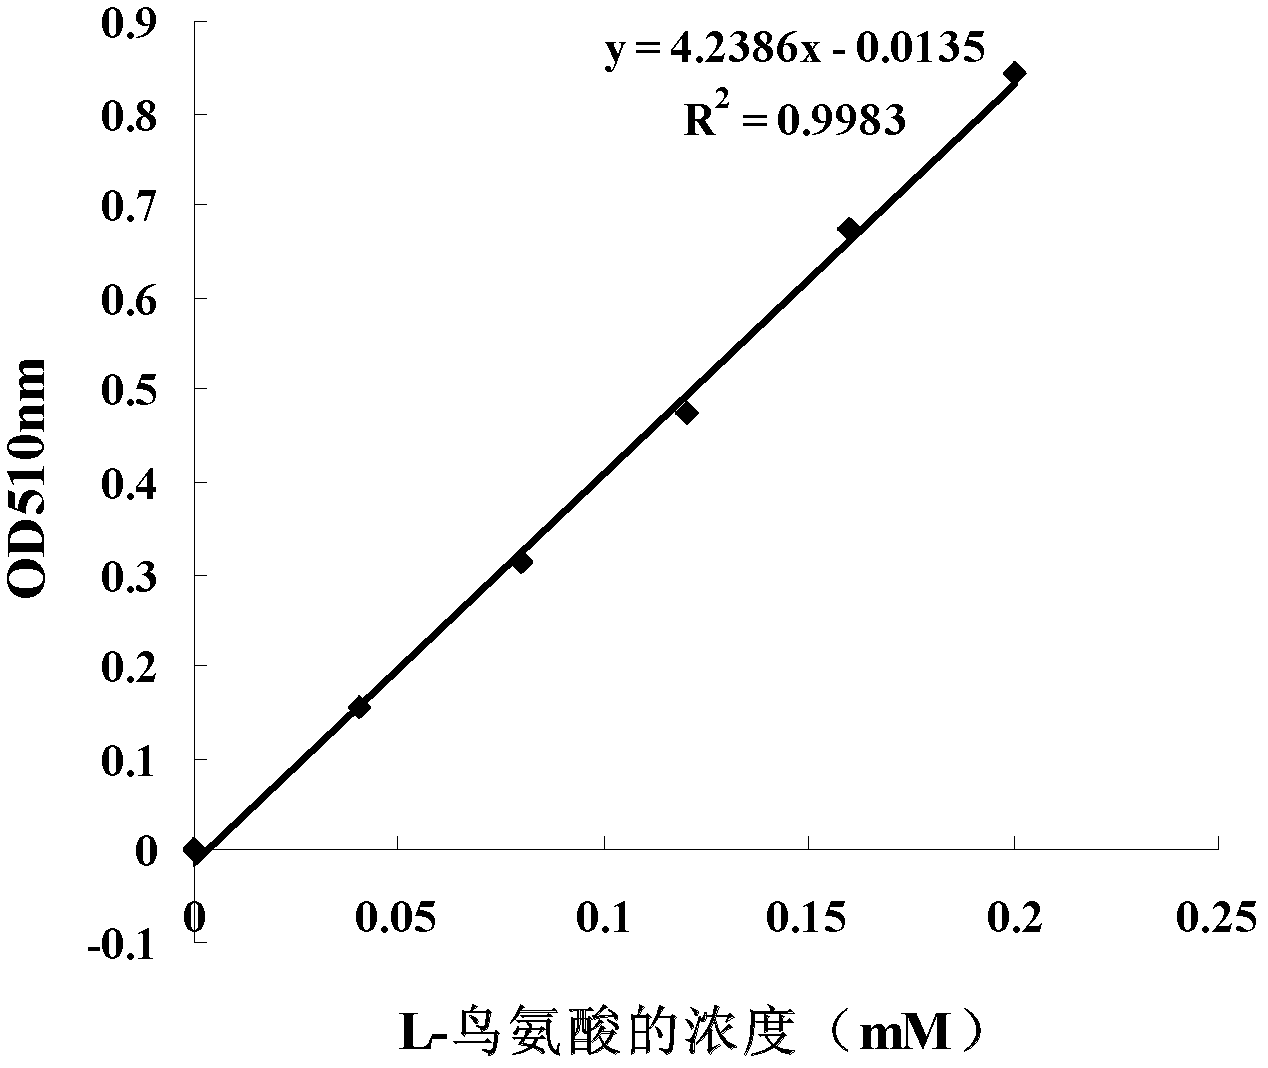 Method for preparing d-arginine hydrochloride and l-ornithine hydrochloride by splitting dl-arginine by microbial enzymatic method